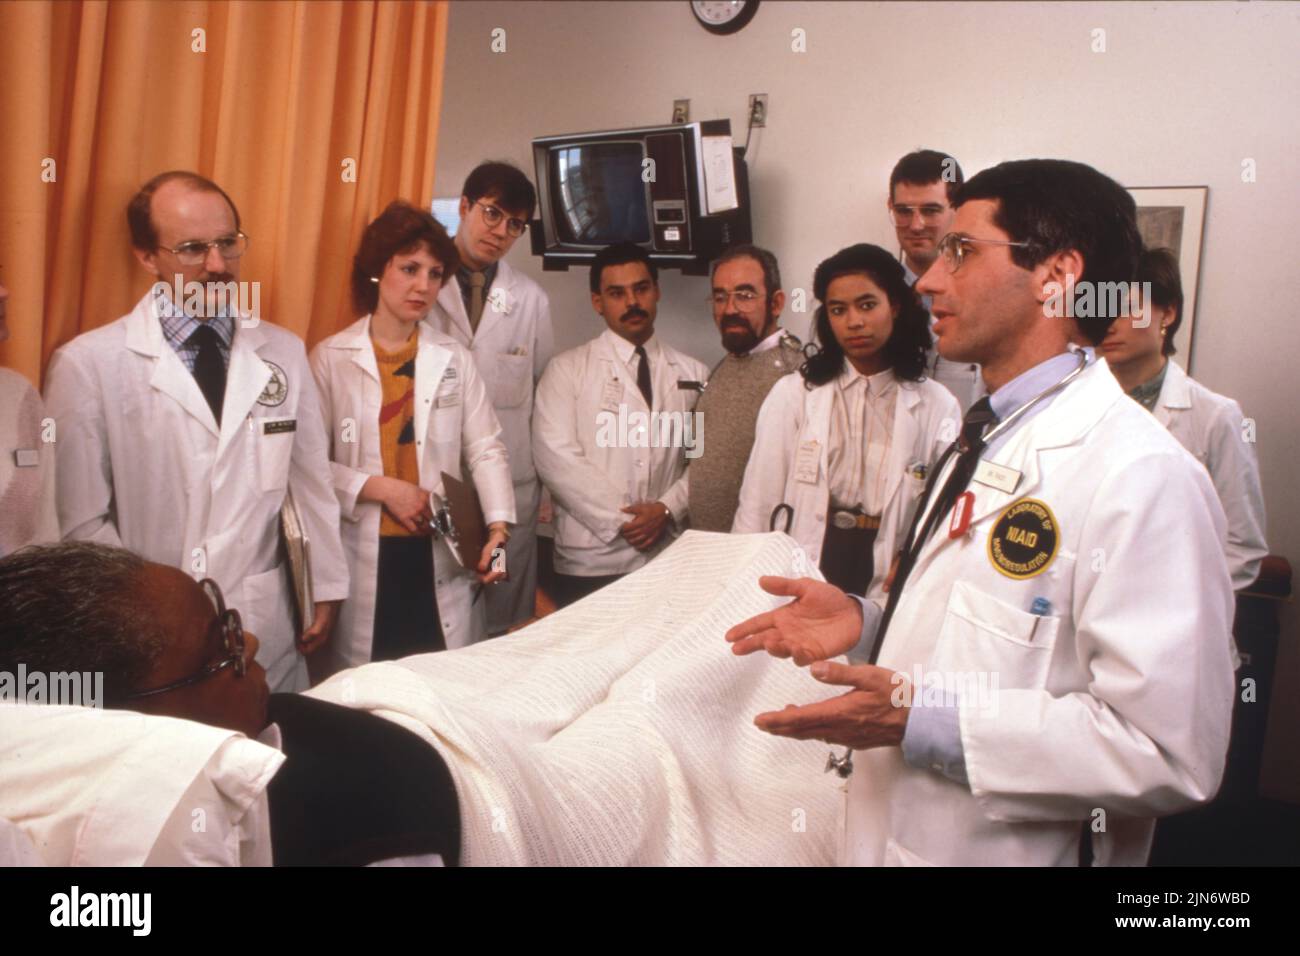 Anthony Fauci durante los primeros años de la epidemia de SIDA Dr. Anthony Fauci y equipo de tratamiento con un paciente de SIDA temprano en NIH durante rondas médicas, alrededor de 1986. Crédito: NIAID Foto de stock